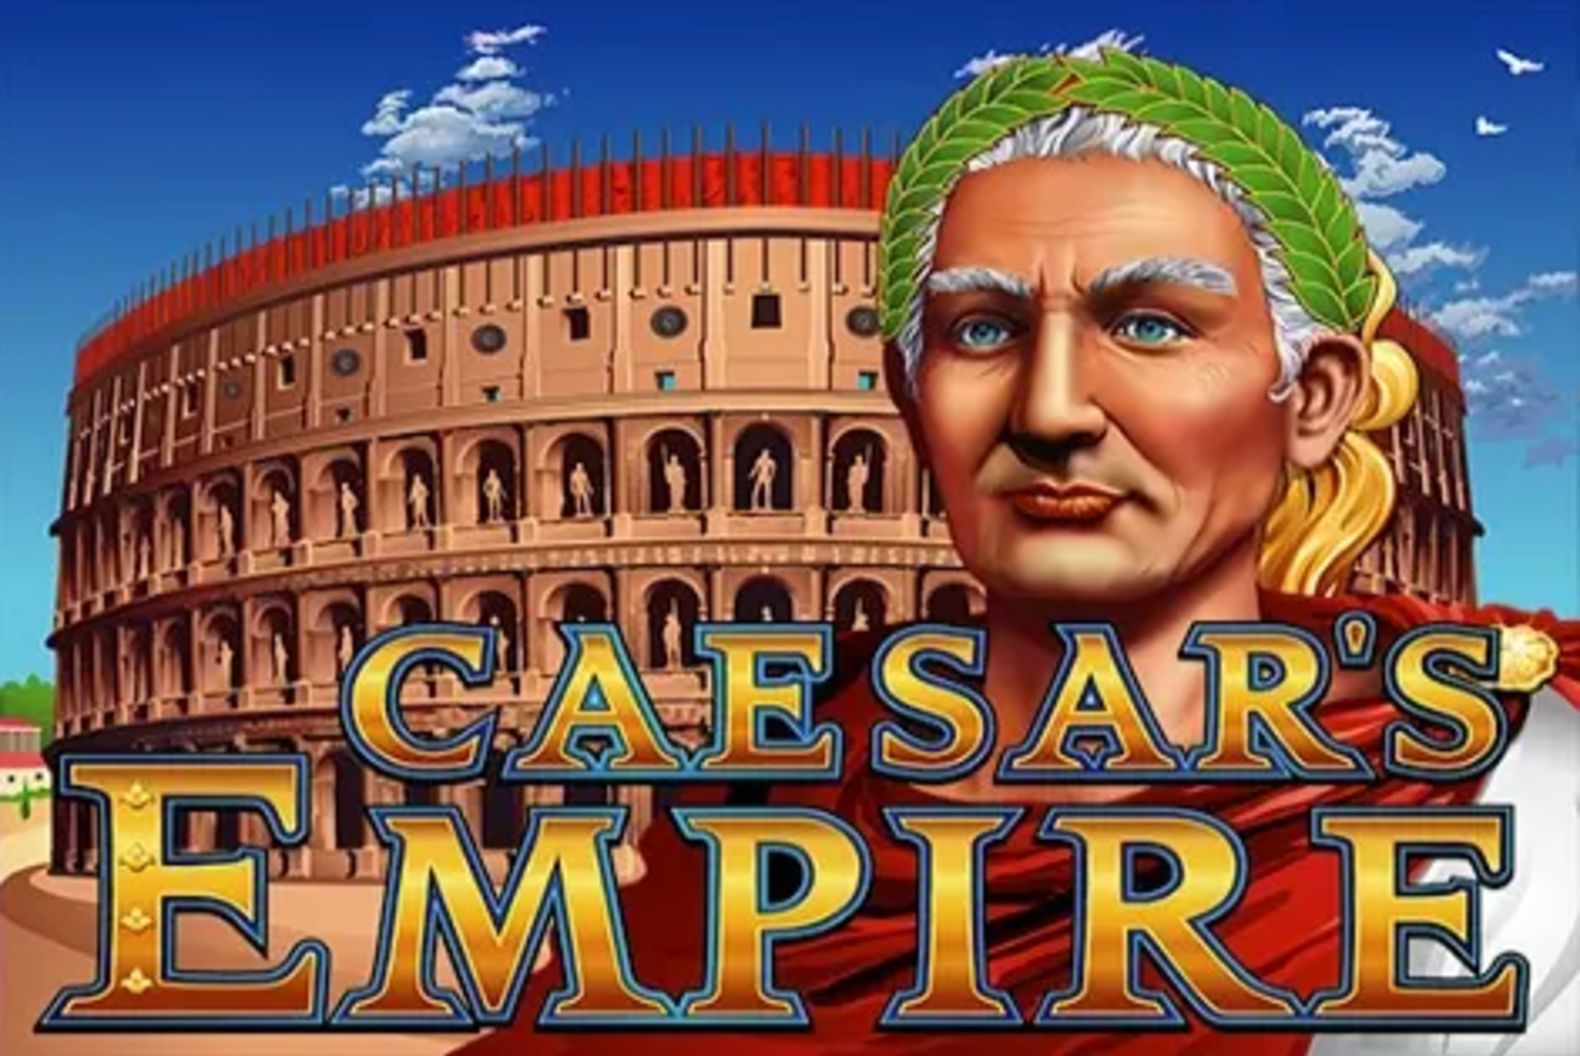 Caesar's Empire